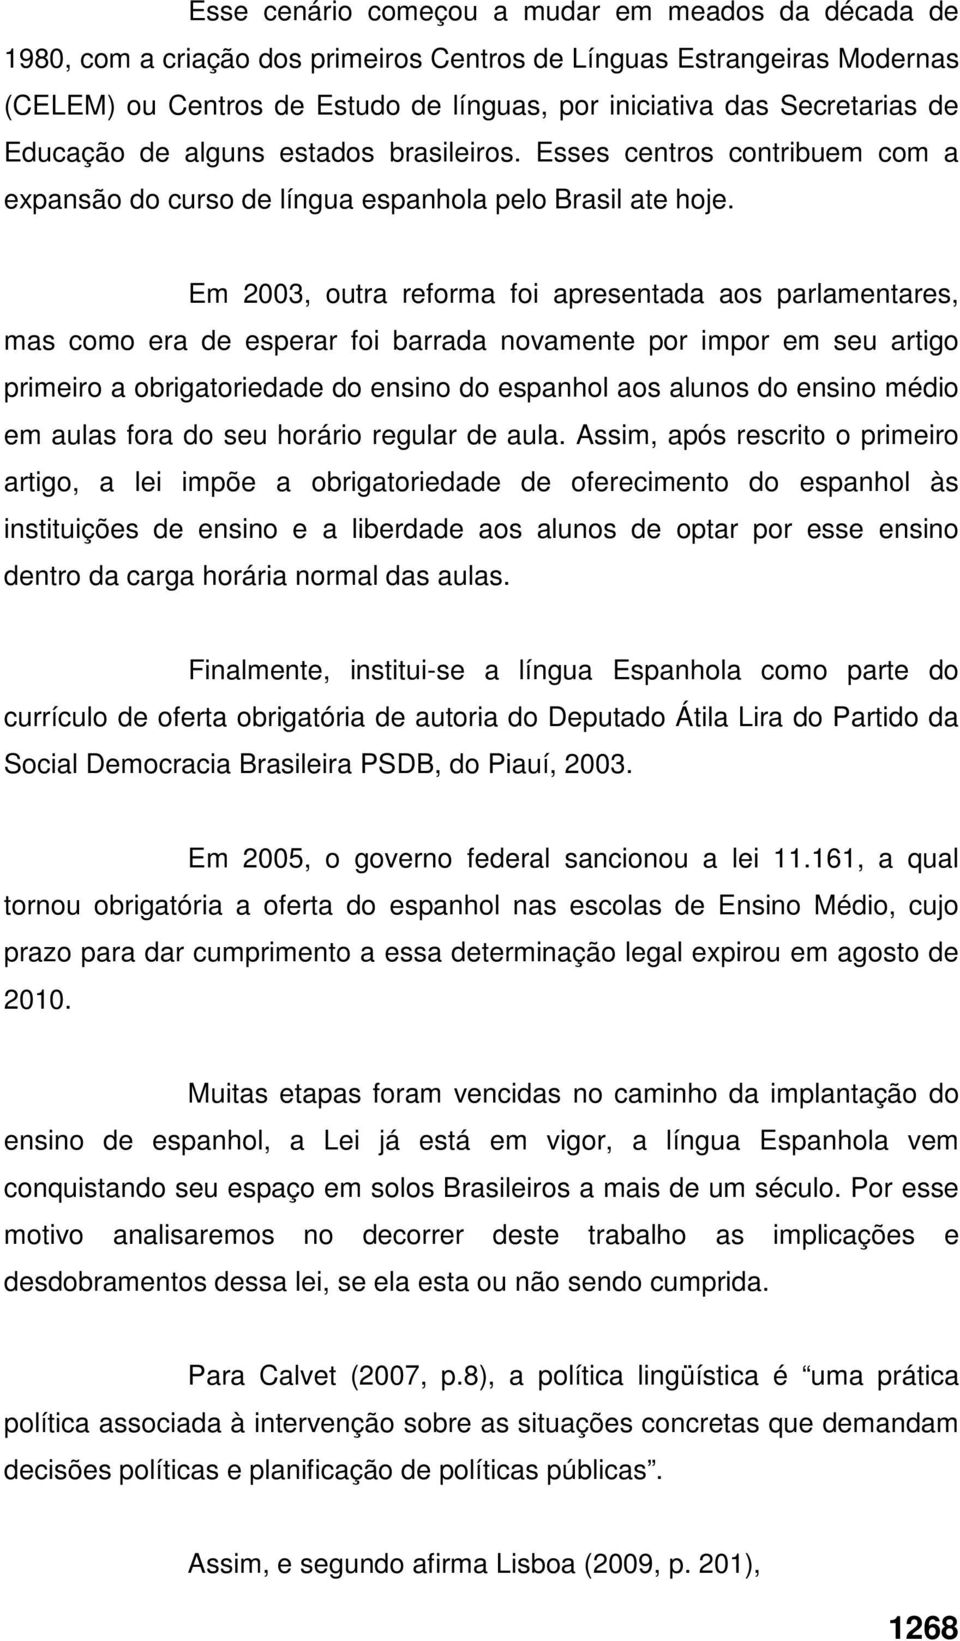 Em 2003, outra reforma foi apresentada aos parlamentares, mas como era de esperar foi barrada novamente por impor em seu artigo primeiro a obrigatoriedade do ensino do espanhol aos alunos do ensino